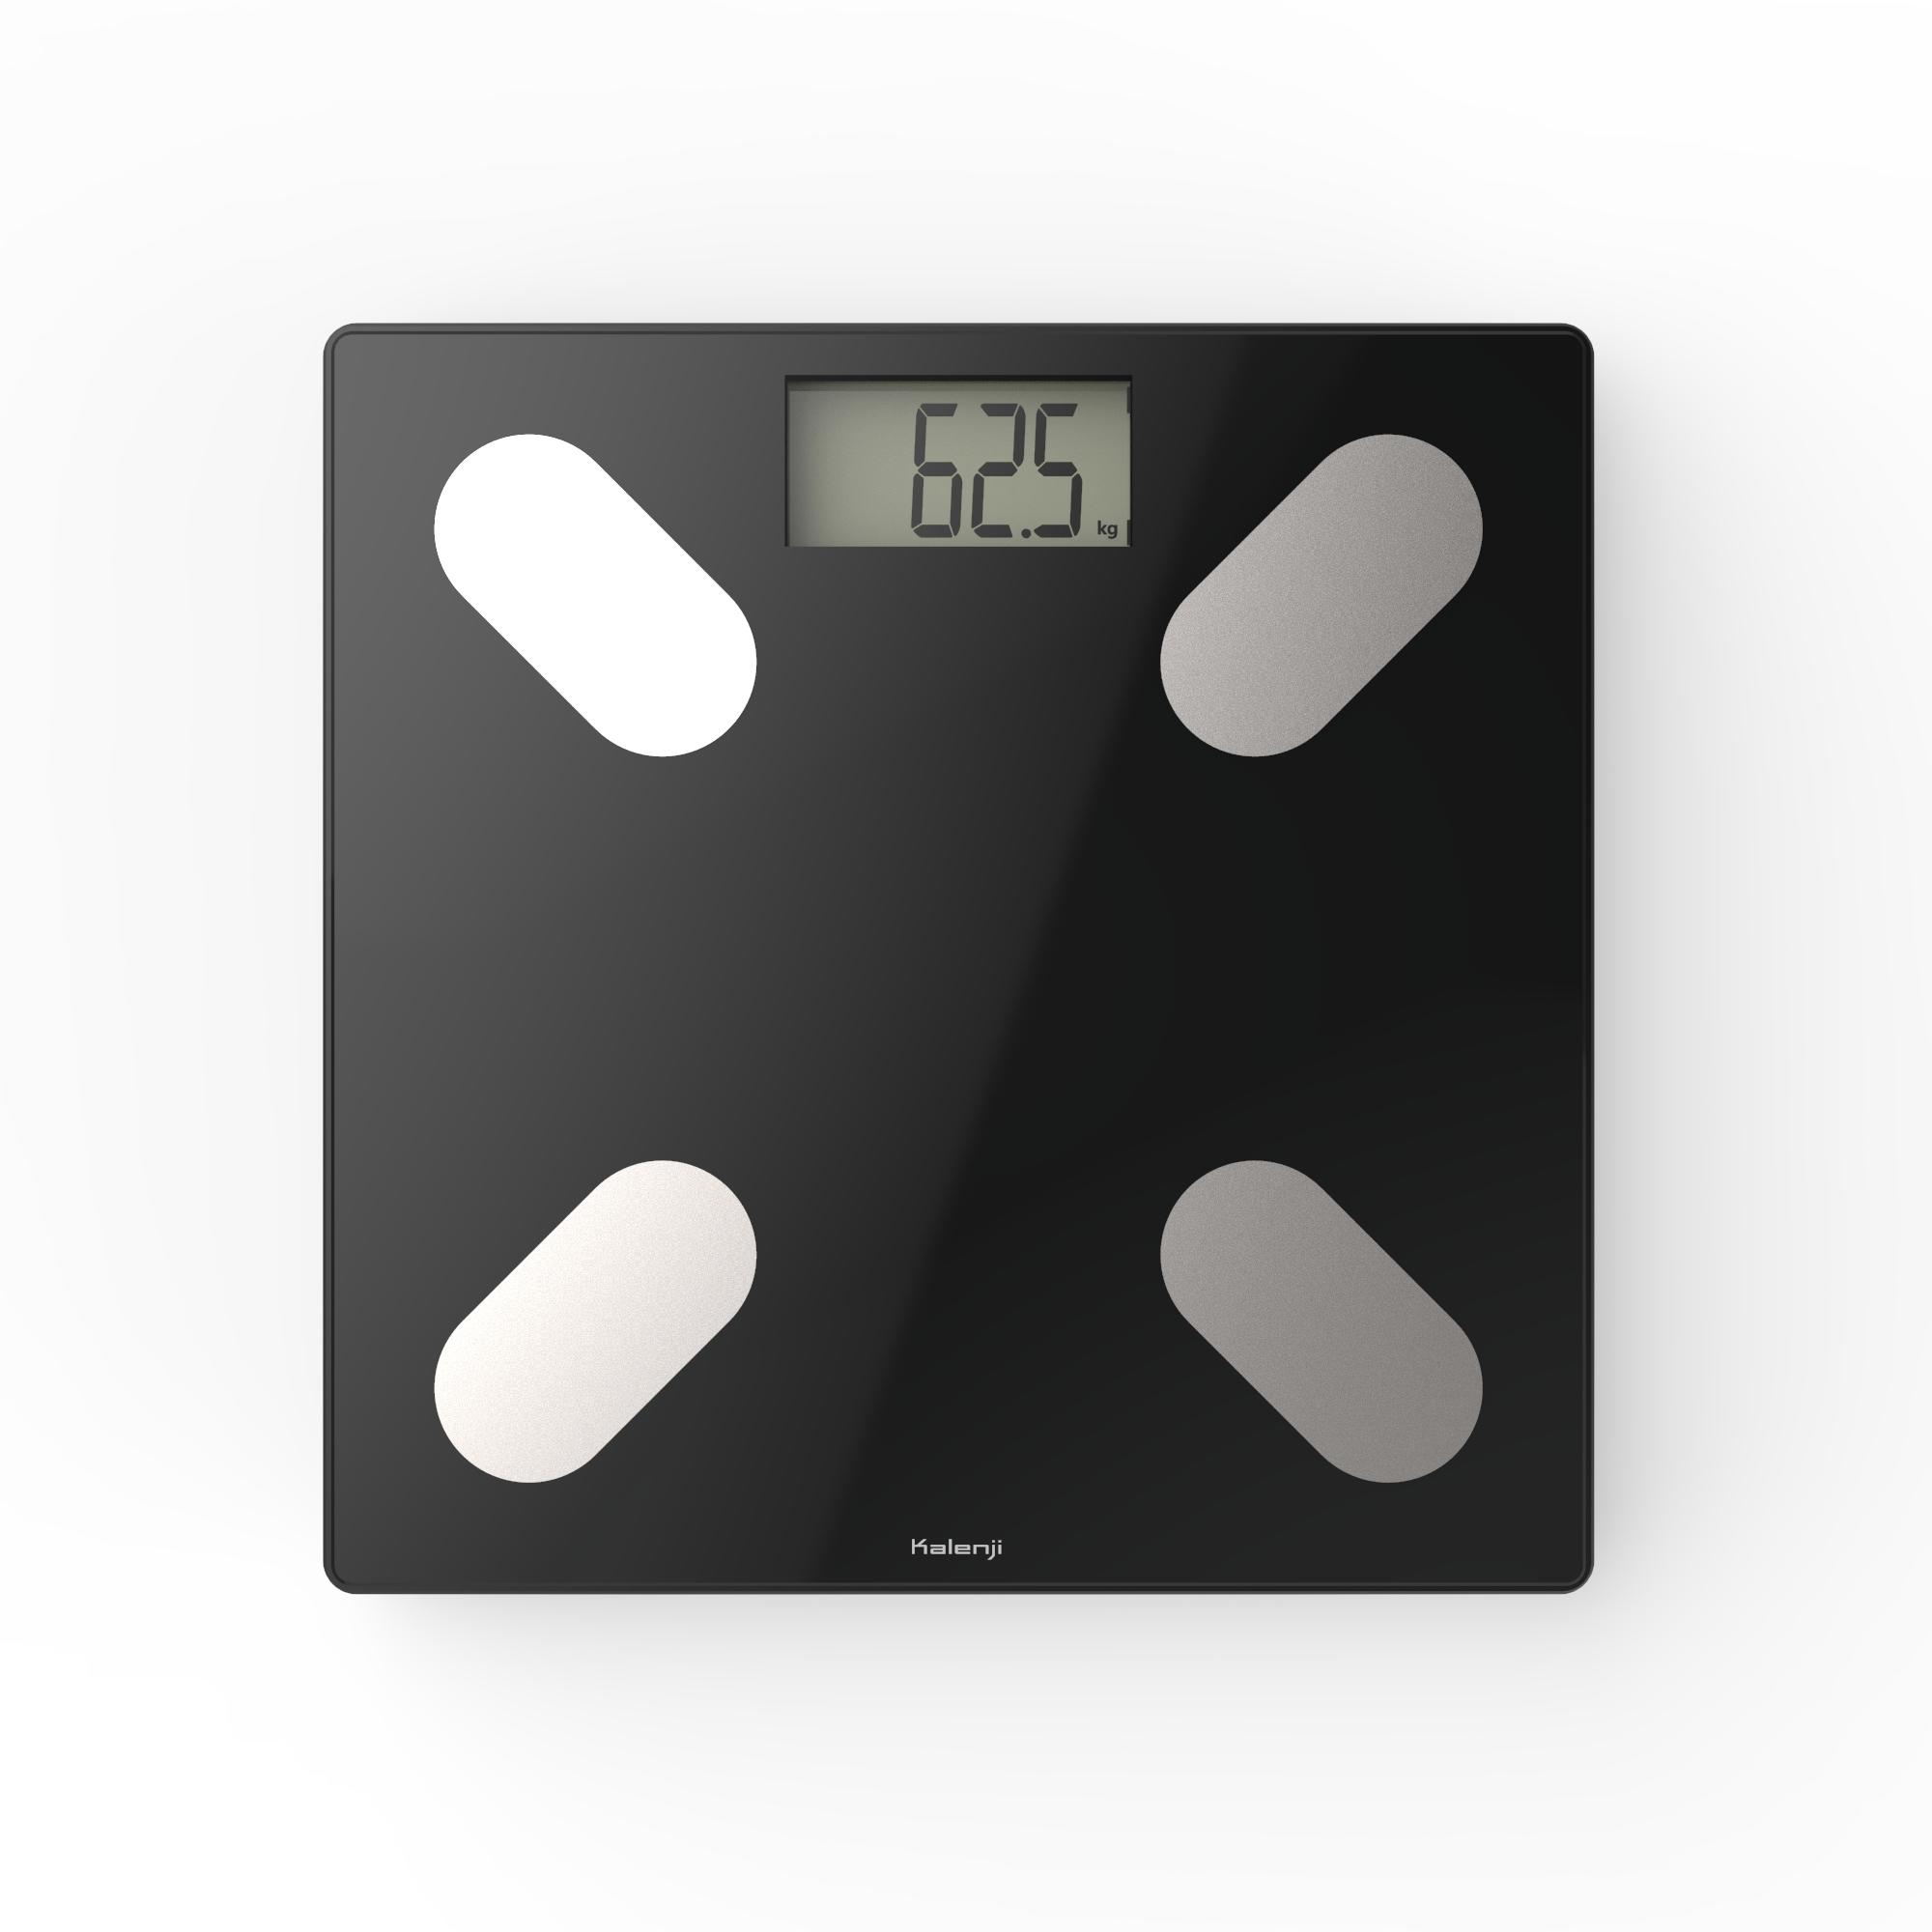 Weighing Scale 500 body analyzer - Glass